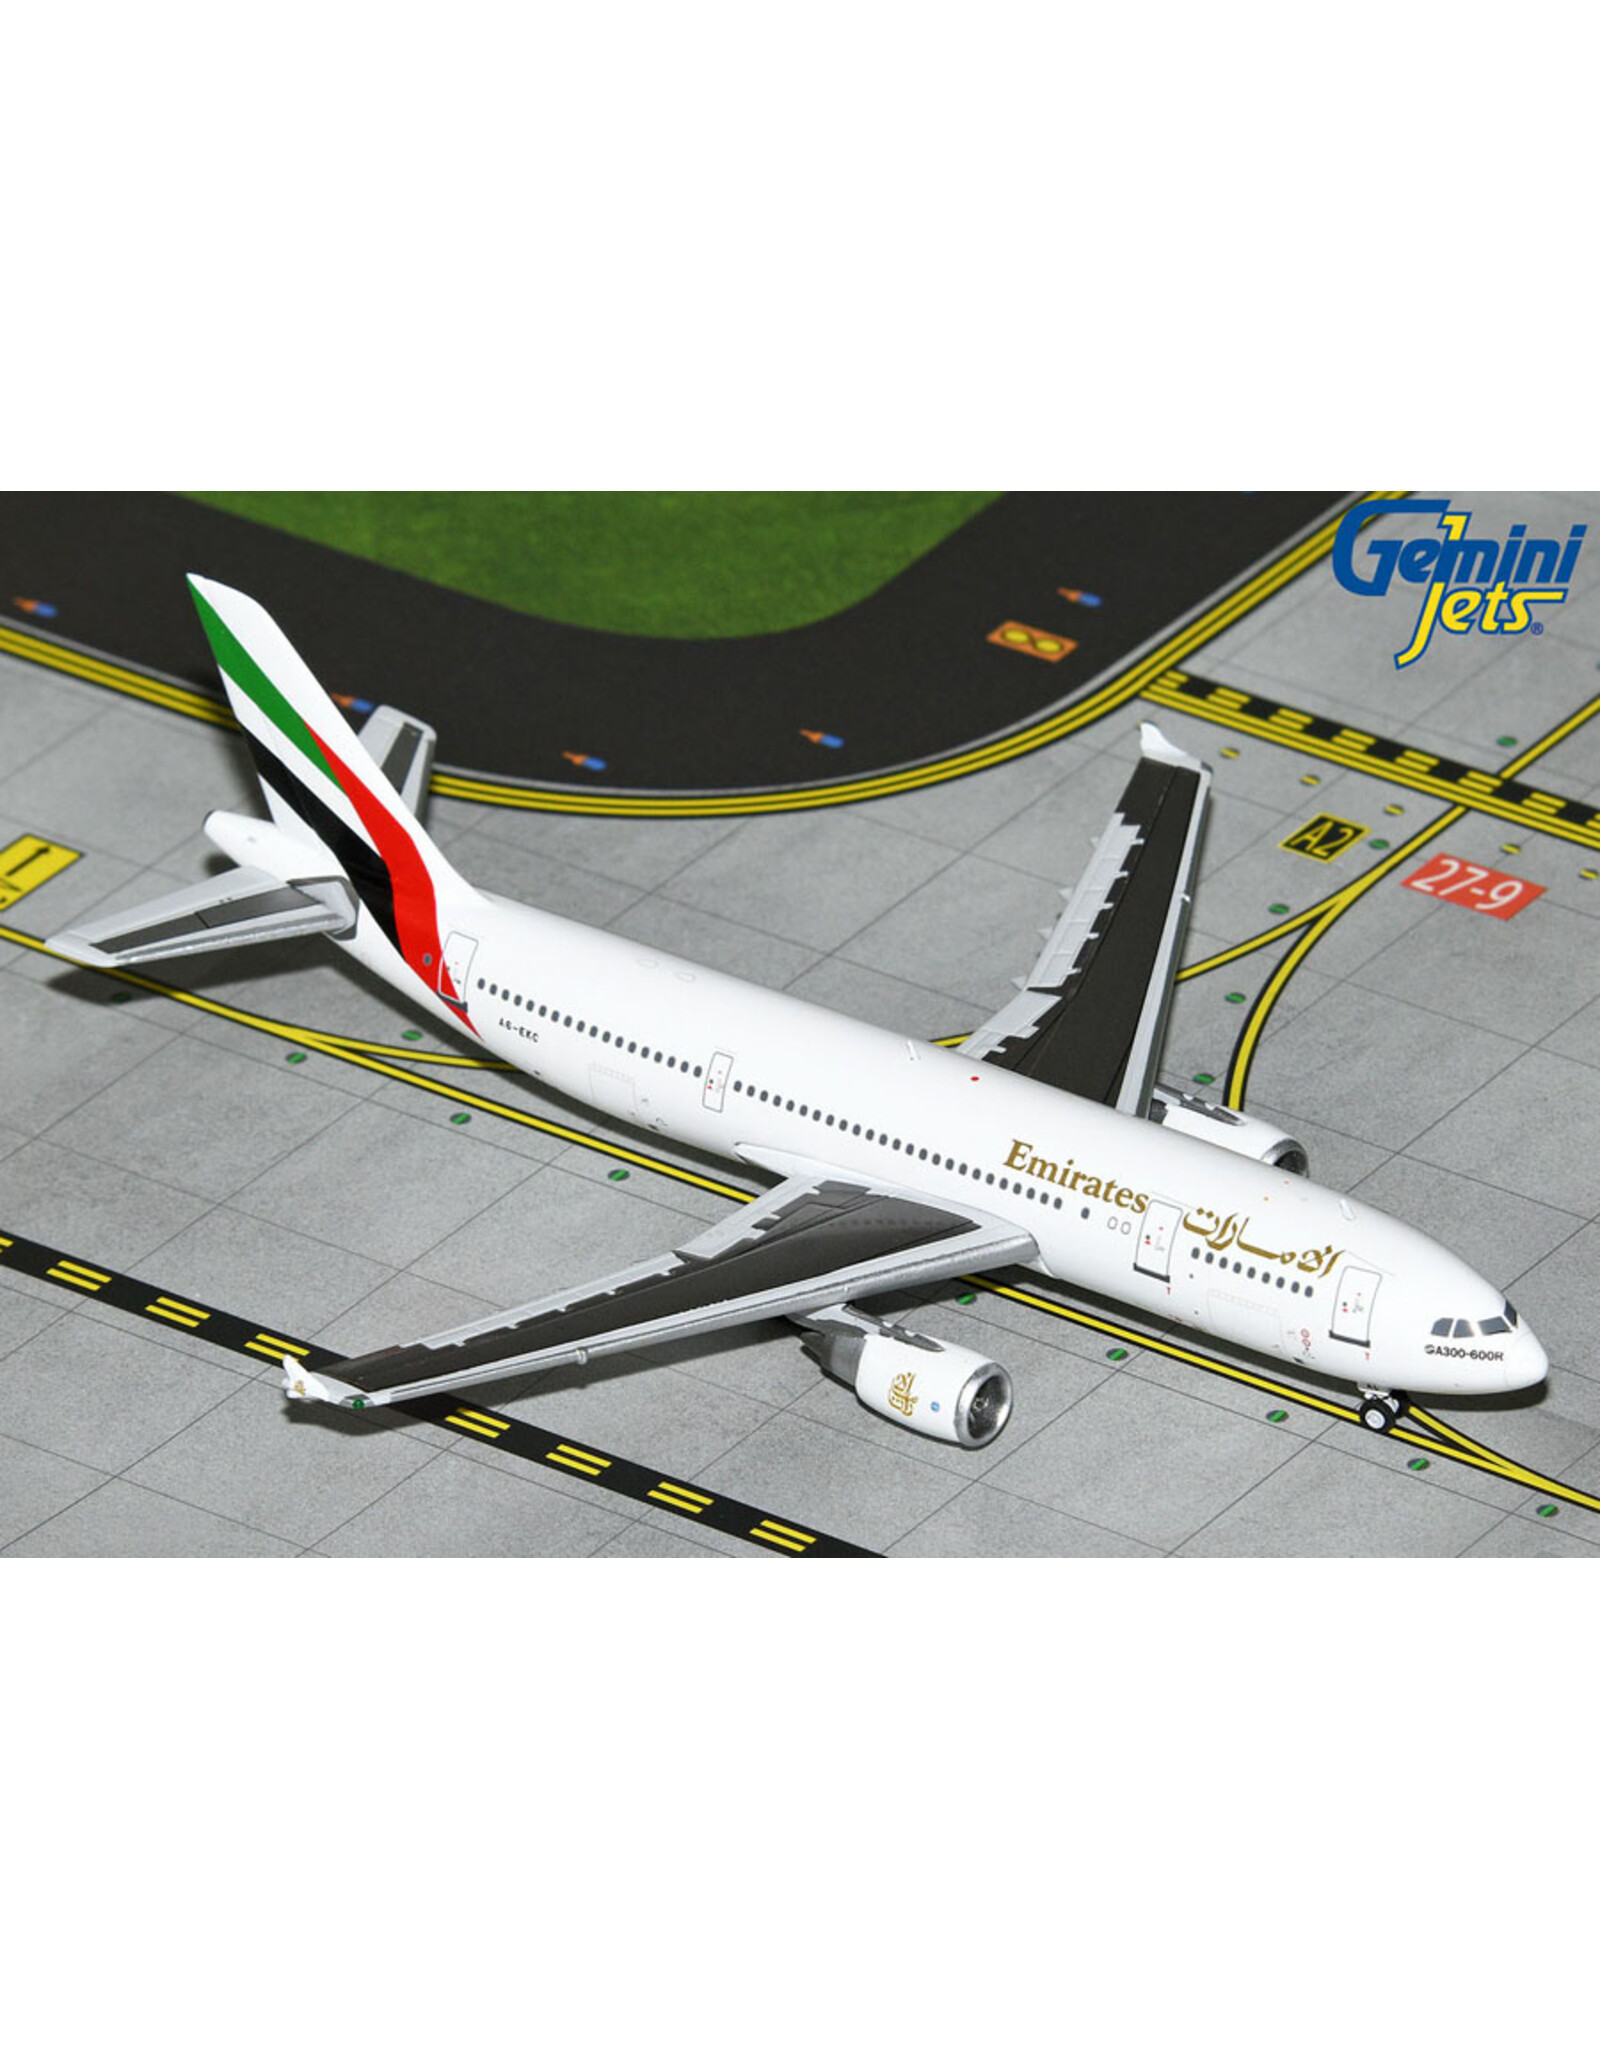 Gemini Gem4 Emirates A300 A6-EKC